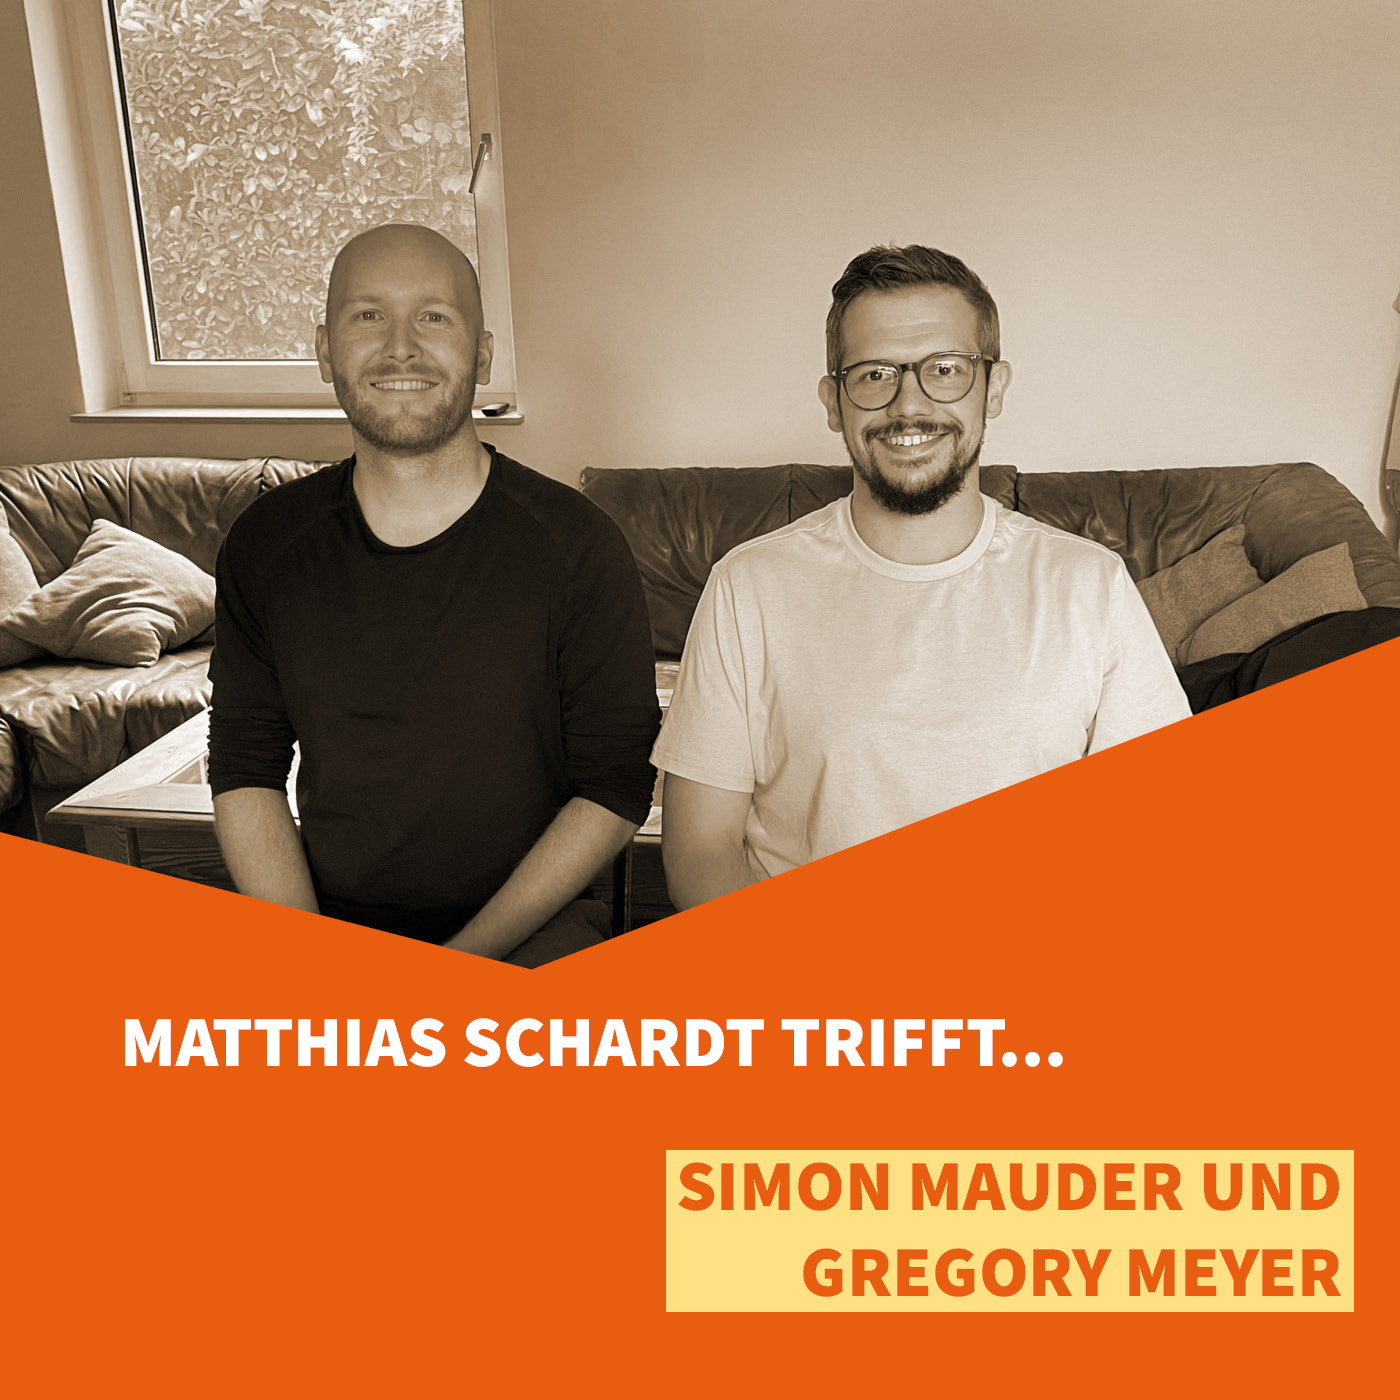 Matthias Schardt trifft Simon Mauder und Gregory Meyer